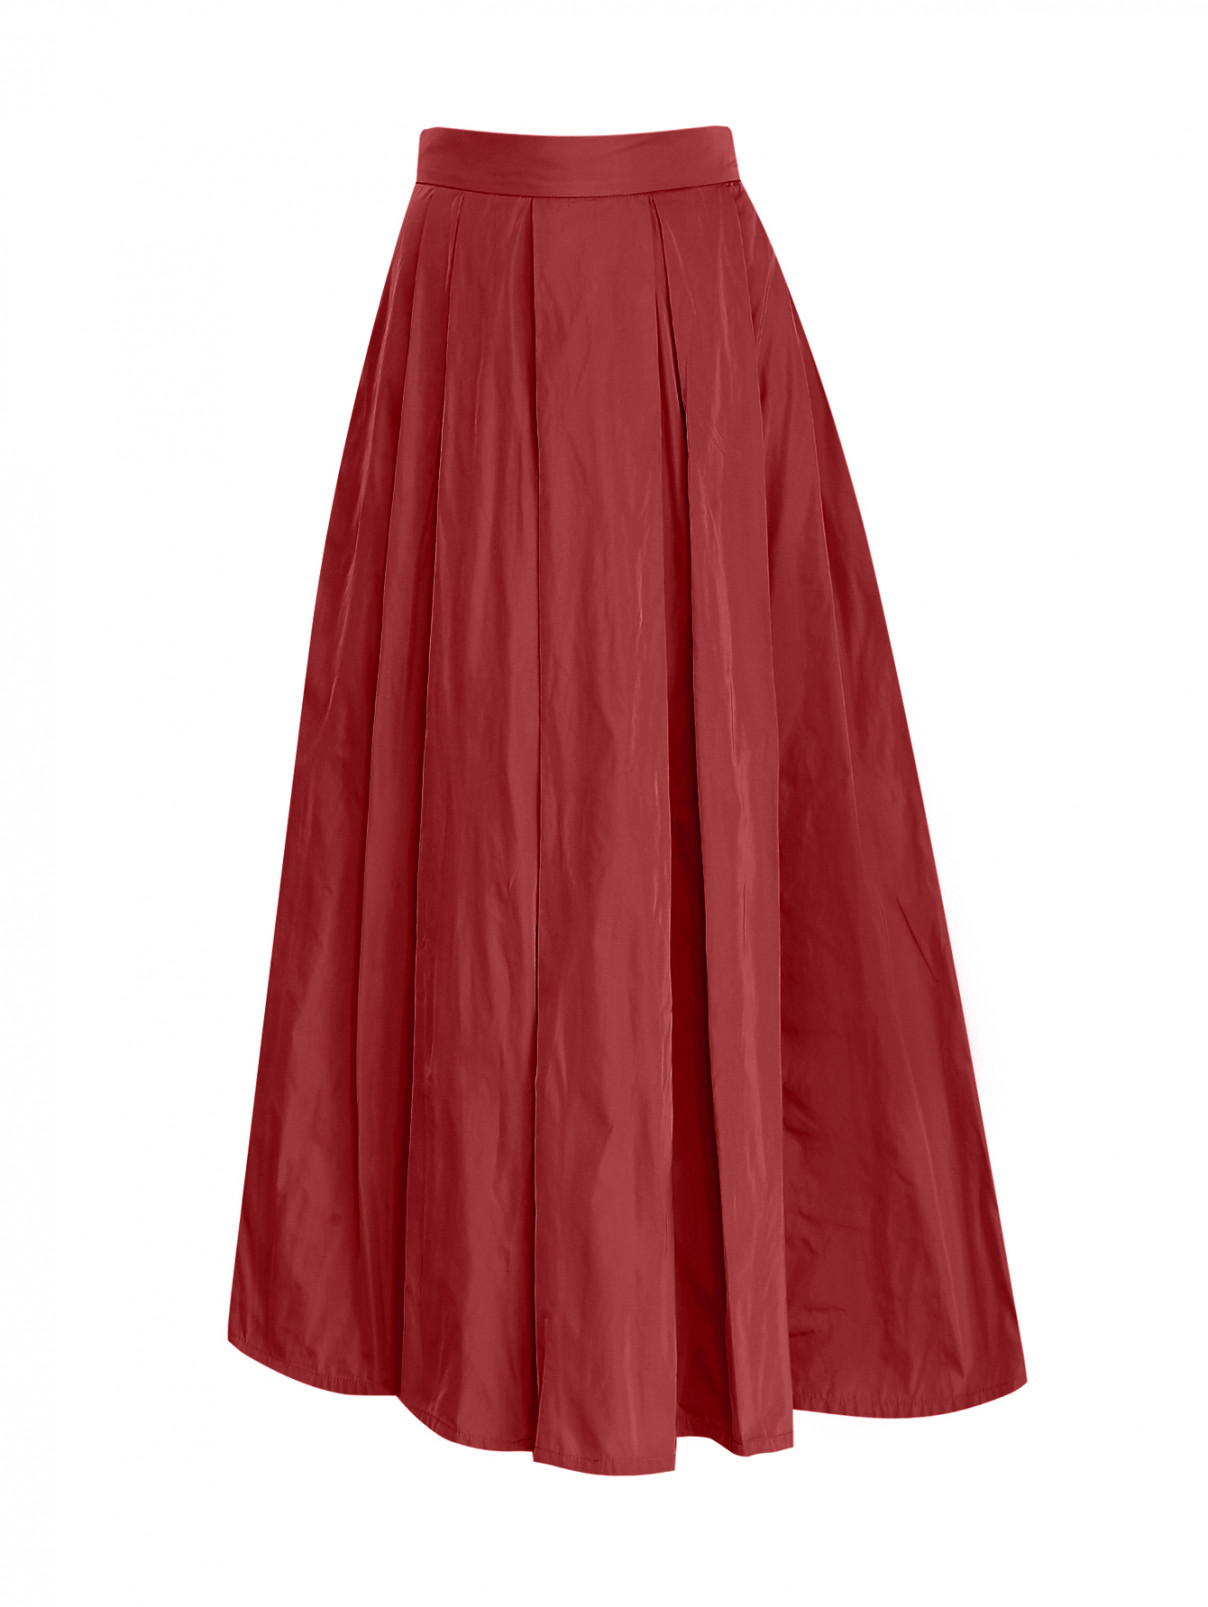 Юбка-миди расклешенного кроя с карманами Max Mara  –  Общий вид  – Цвет:  Красный